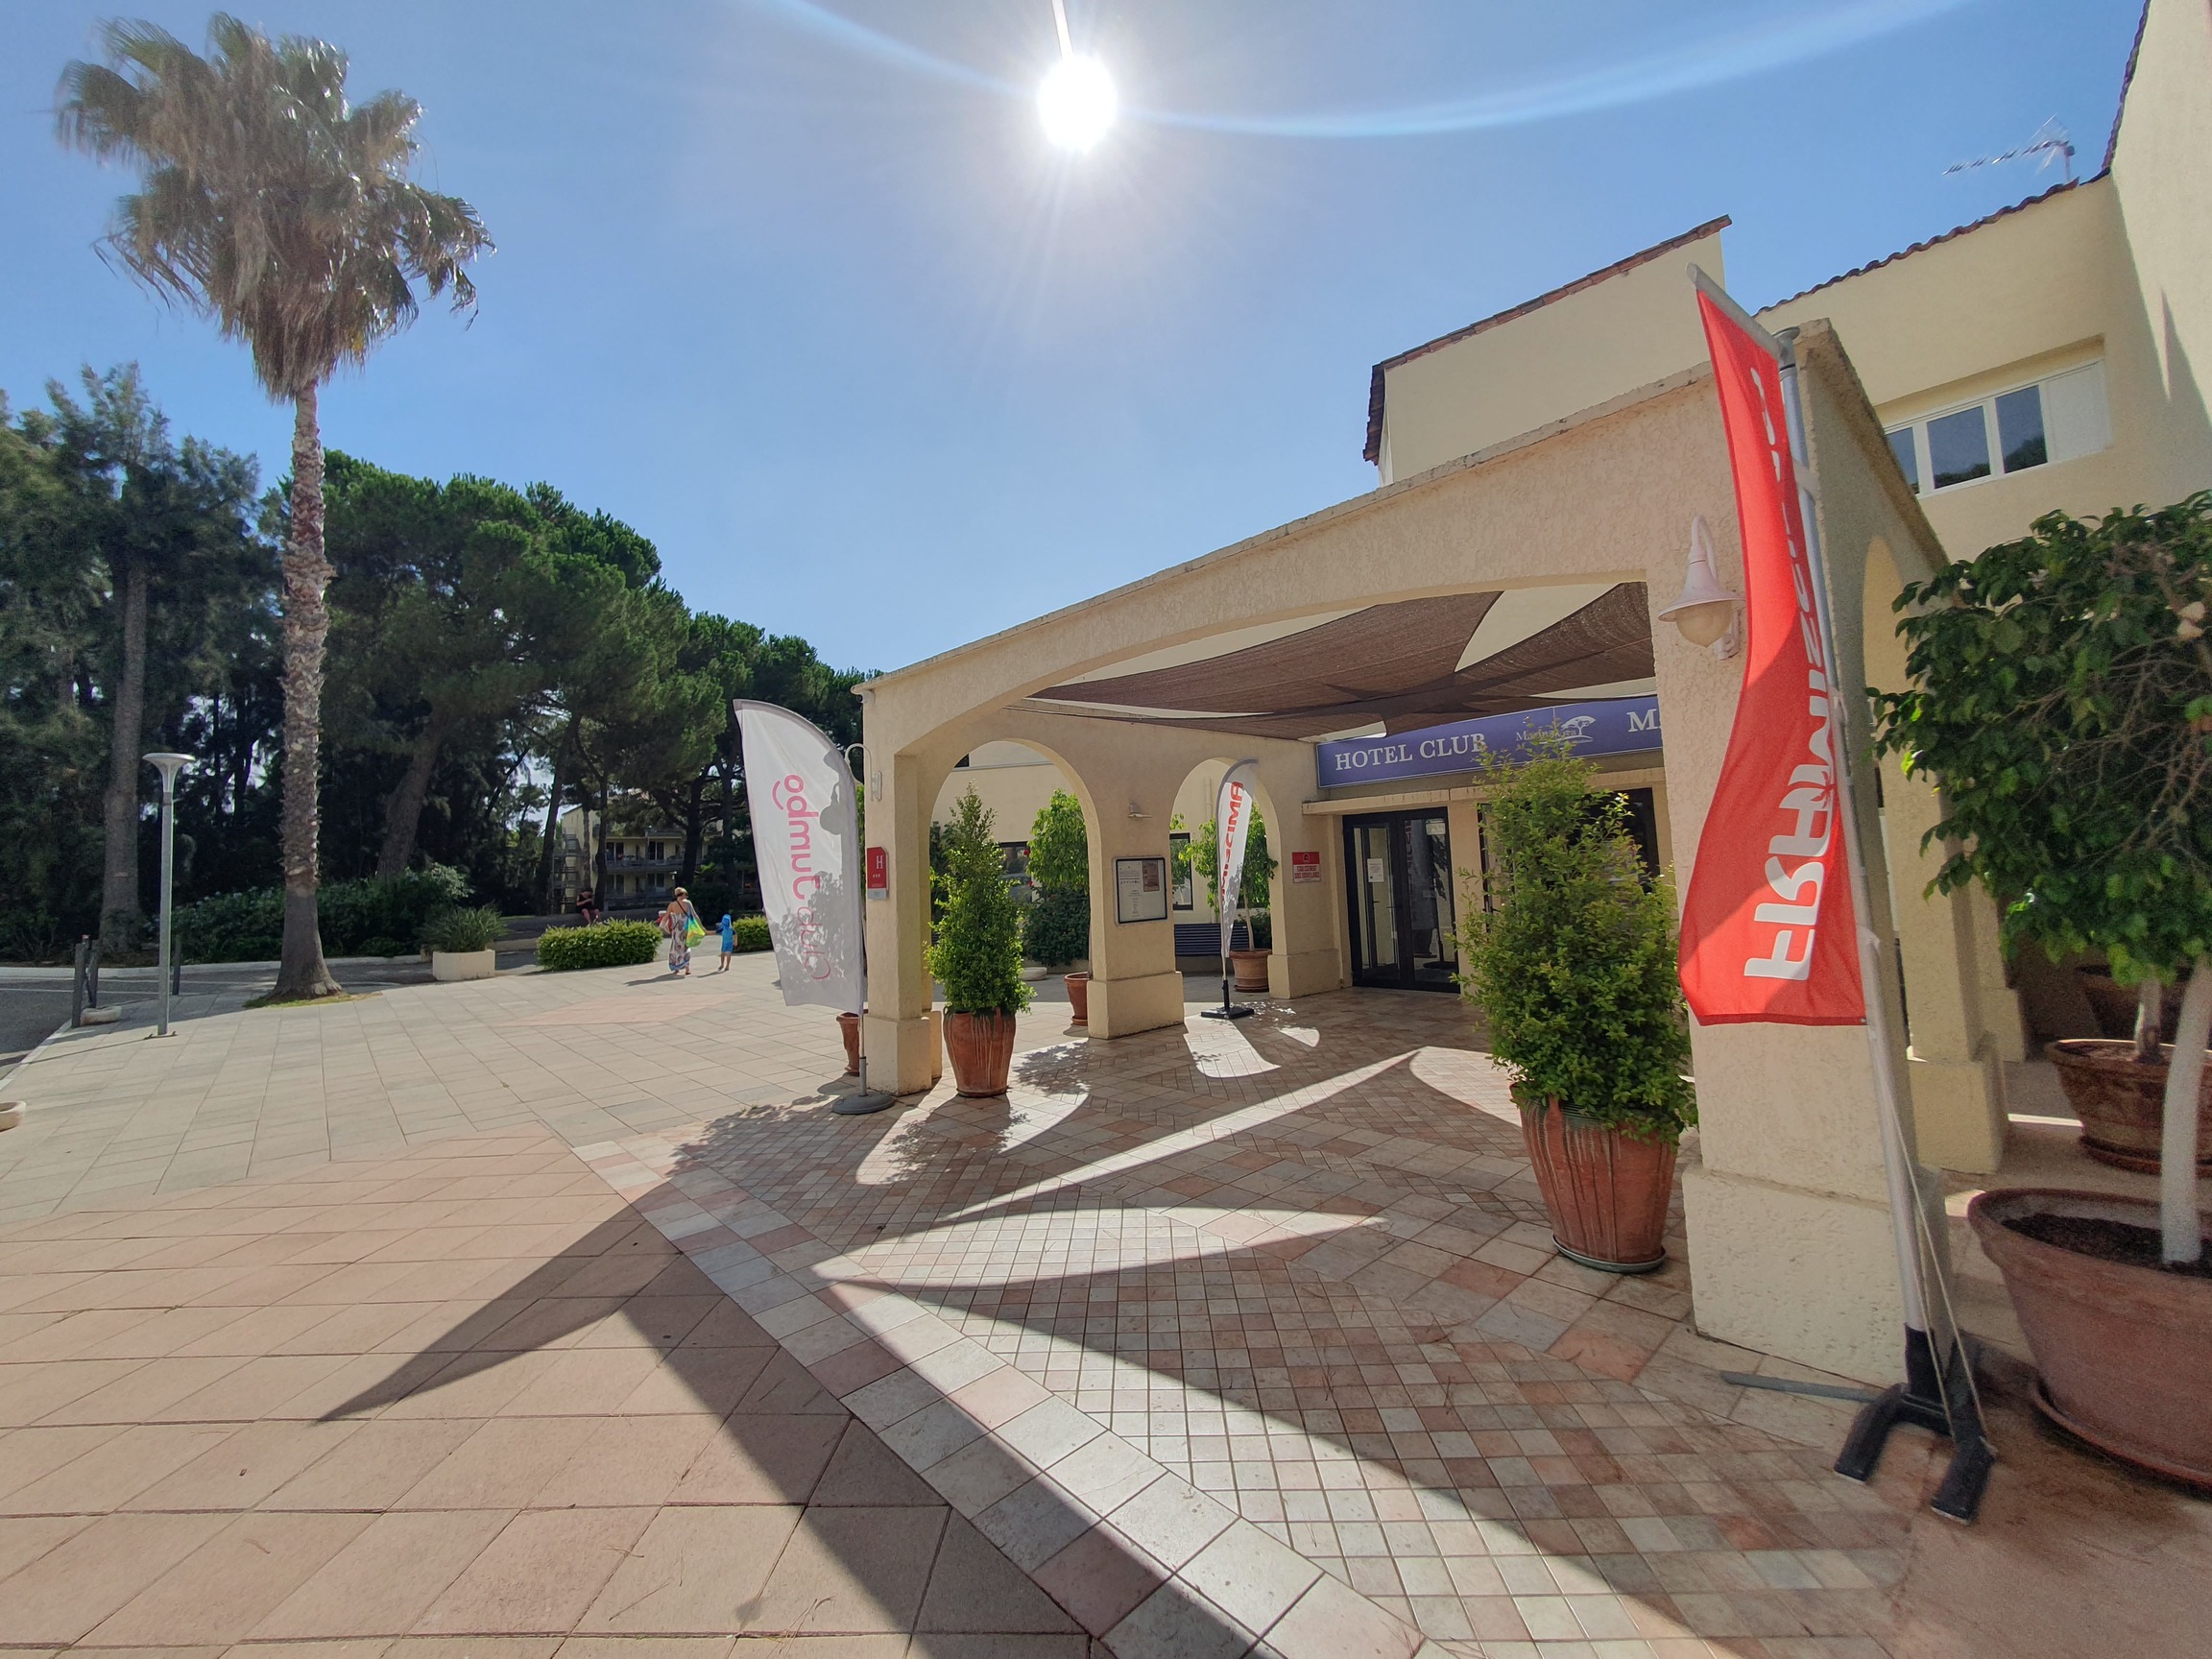 L'entrée de la réception de l'hôtel club Marina Viva de Porticcio.